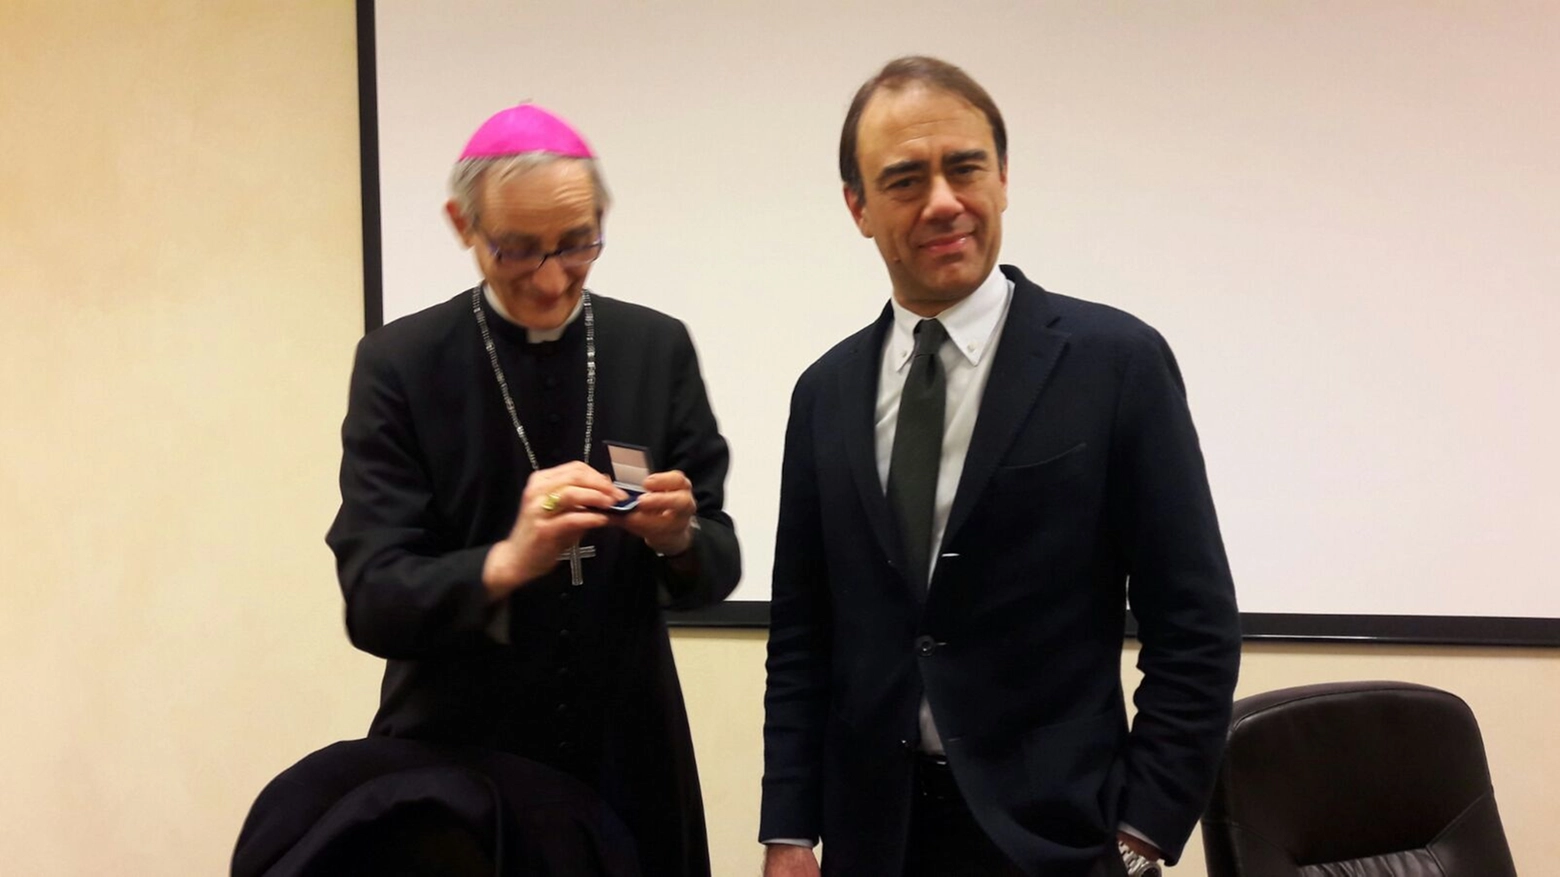 L'arcivescovo Matteo Zuppi con Andrea Cangini, direttore di Qn - Il Resto del Carlino